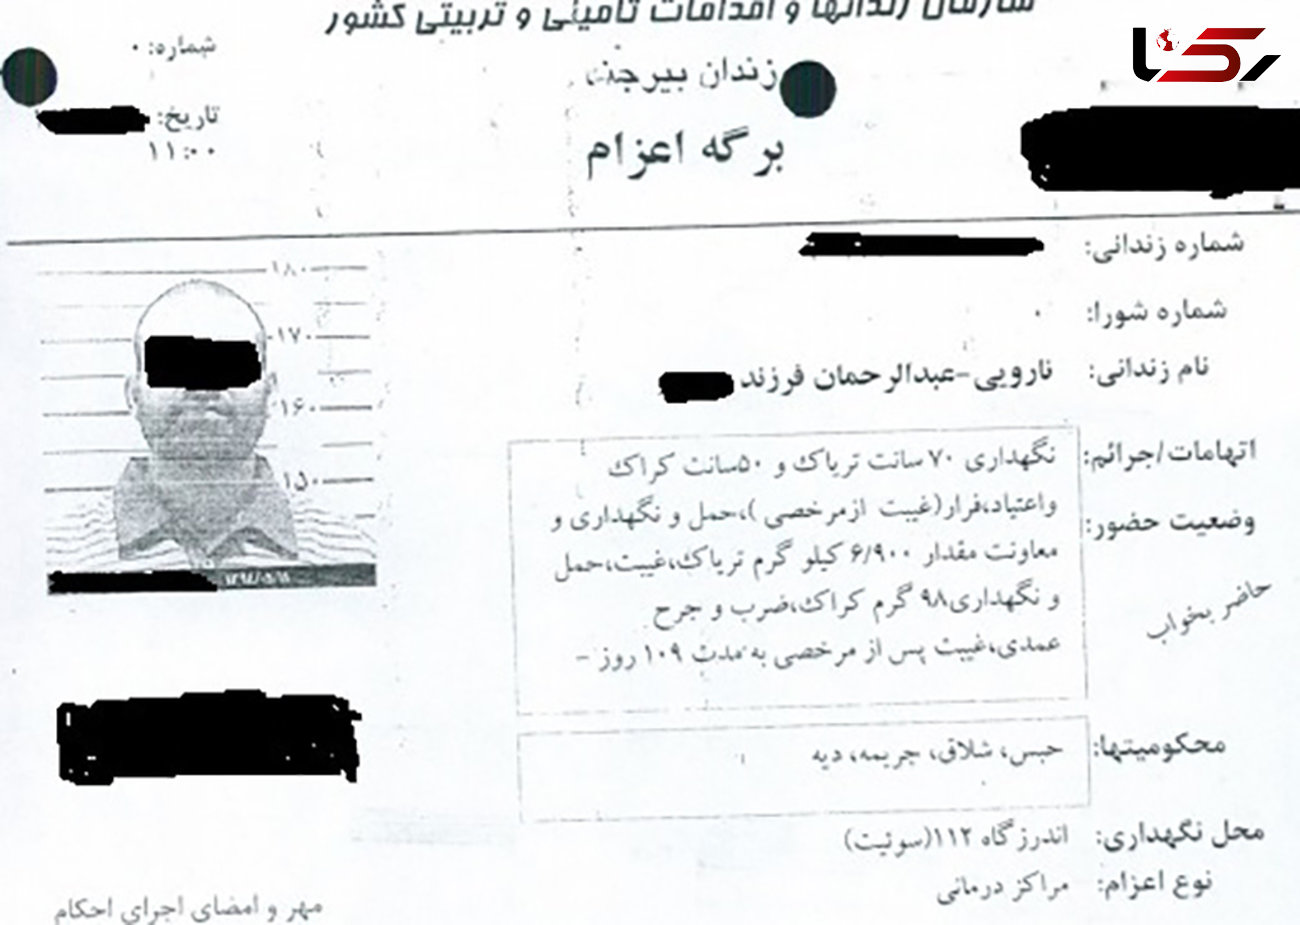 جزییات مرگ یک زندانی با شوکر برقی در زندان بیرجند + عکس  و سند